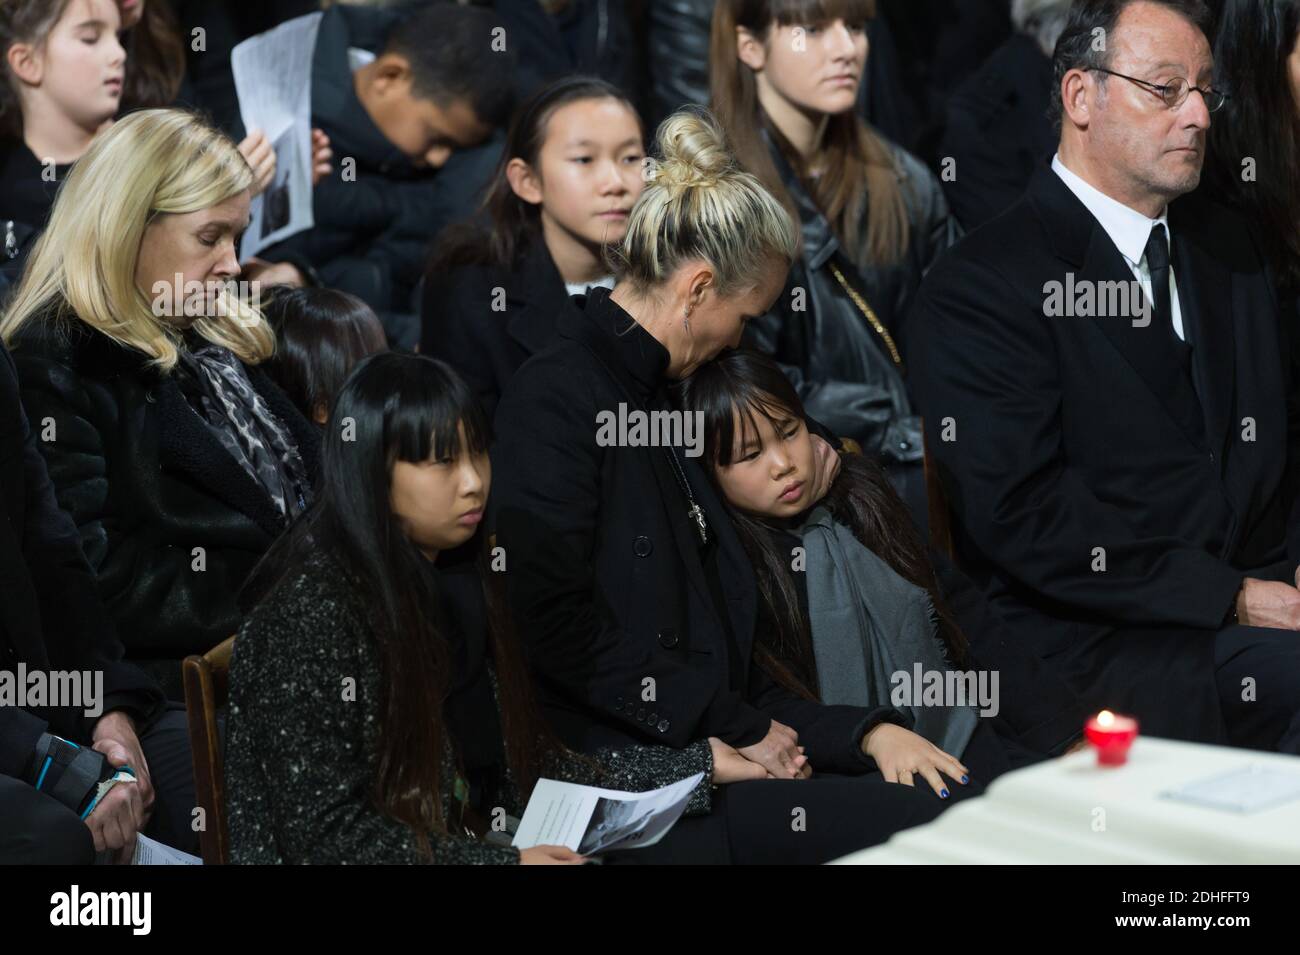 Laeticia Hallyday, Joy et Jade sont assis lors de la cérémonie funéraire de Johnny Hallyday à l'Eglise de la Madeleine, à Paris, le 9 décembre 2017. Photo par acques Witt/Pool/ABACAPRESS.COM Banque D'Images